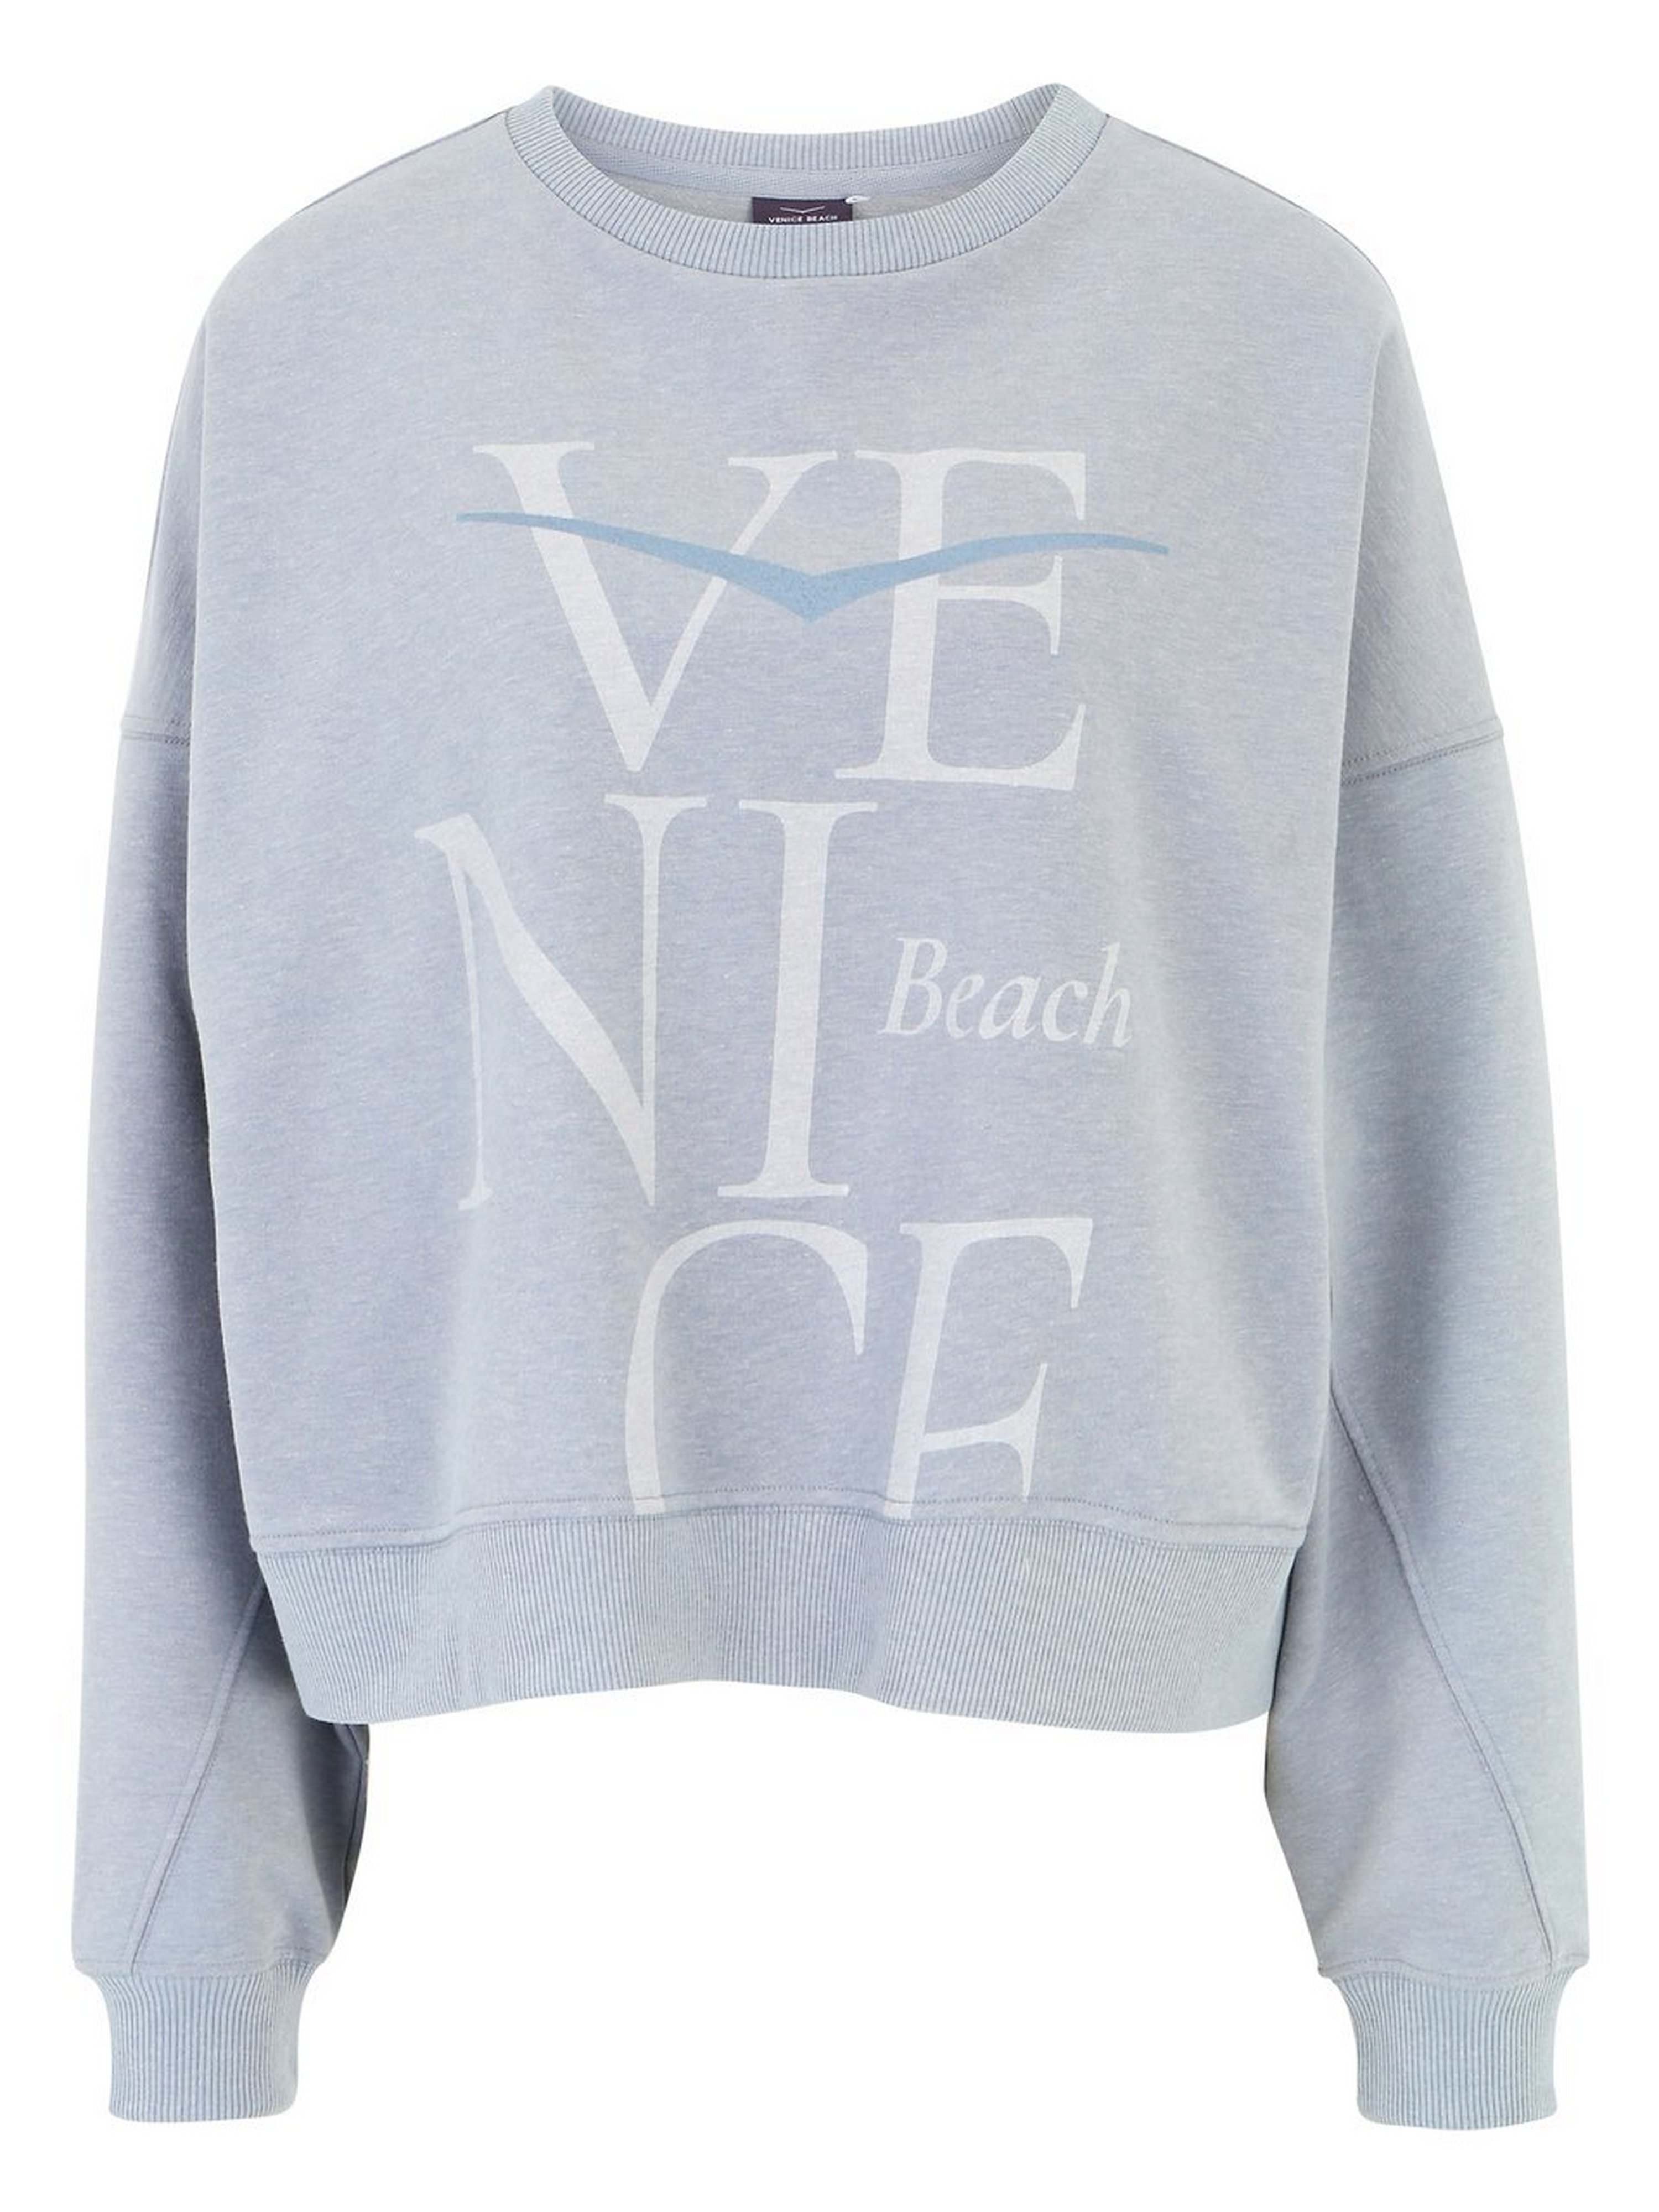 Sweatshirt Van Venice Beach grijs